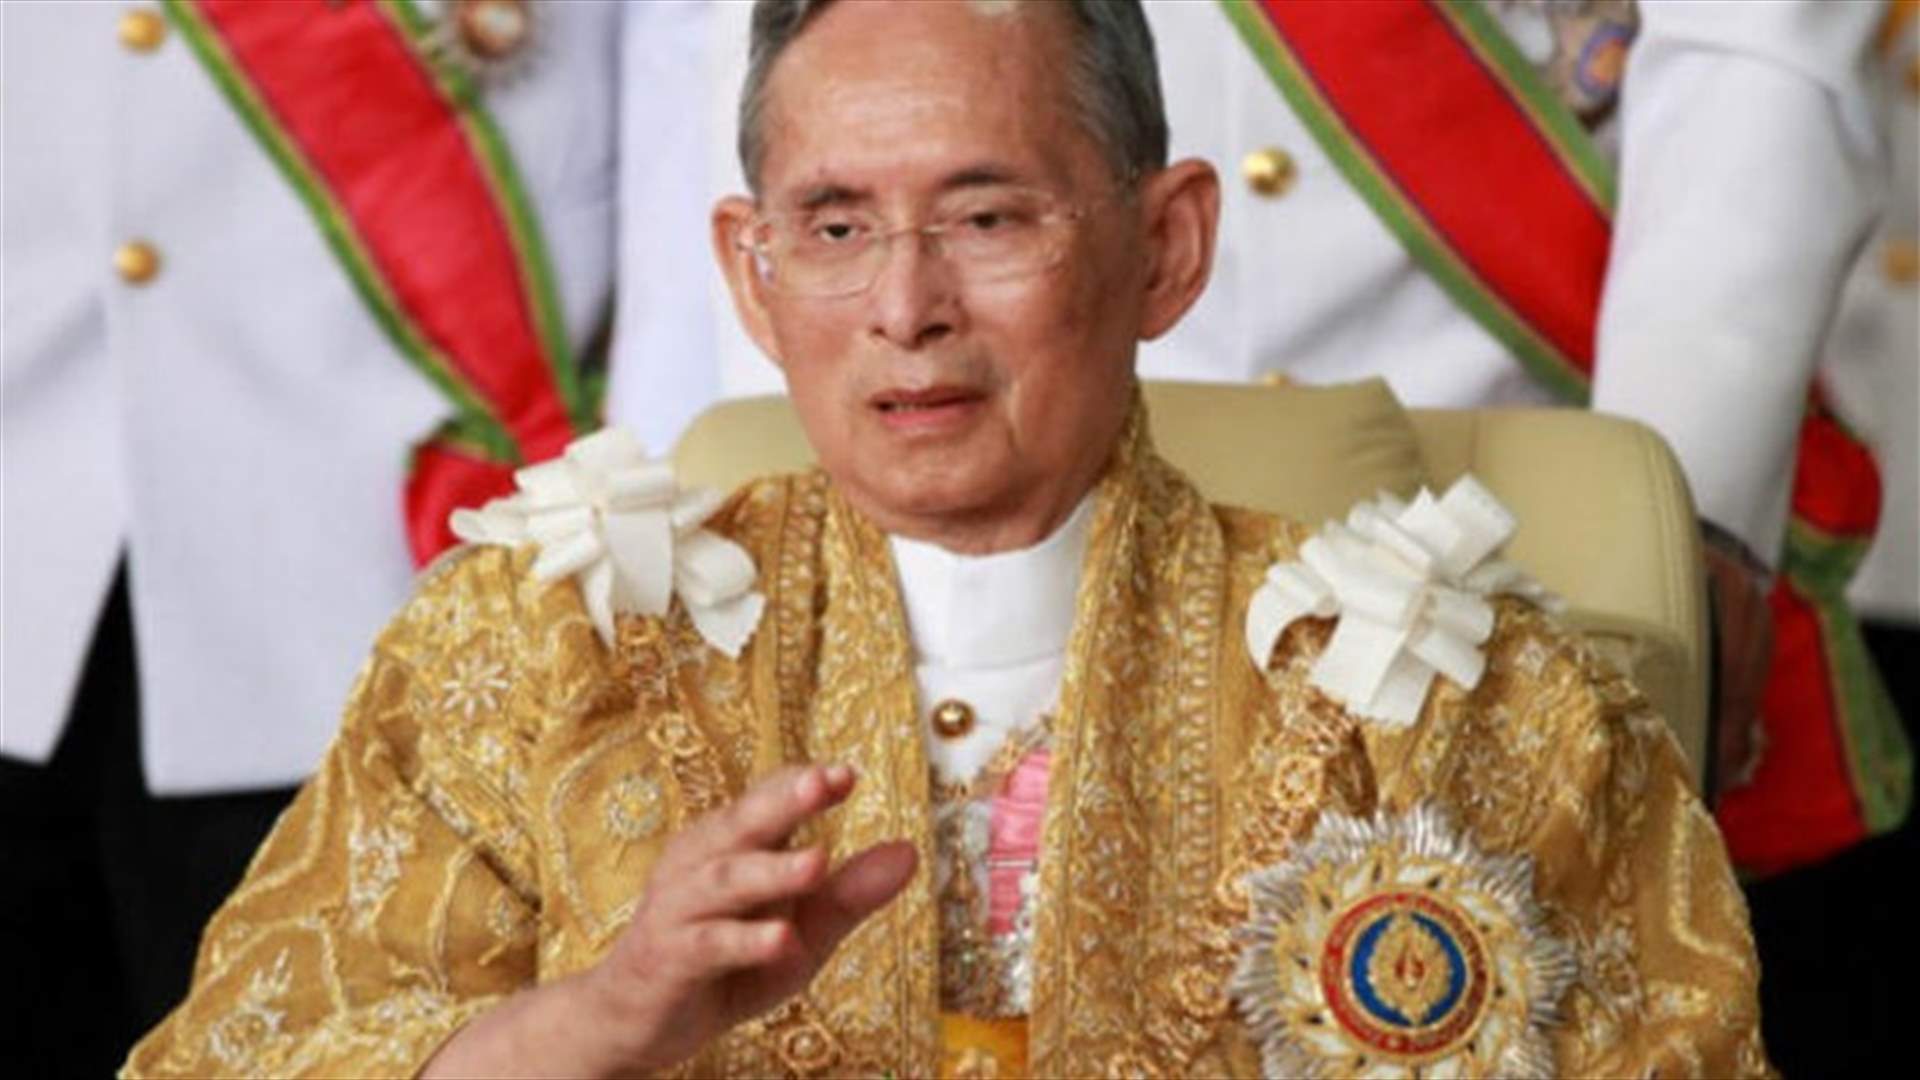 بعد 7 عقود على توليه الحكم... ملك تايلاند يغادر شعبه